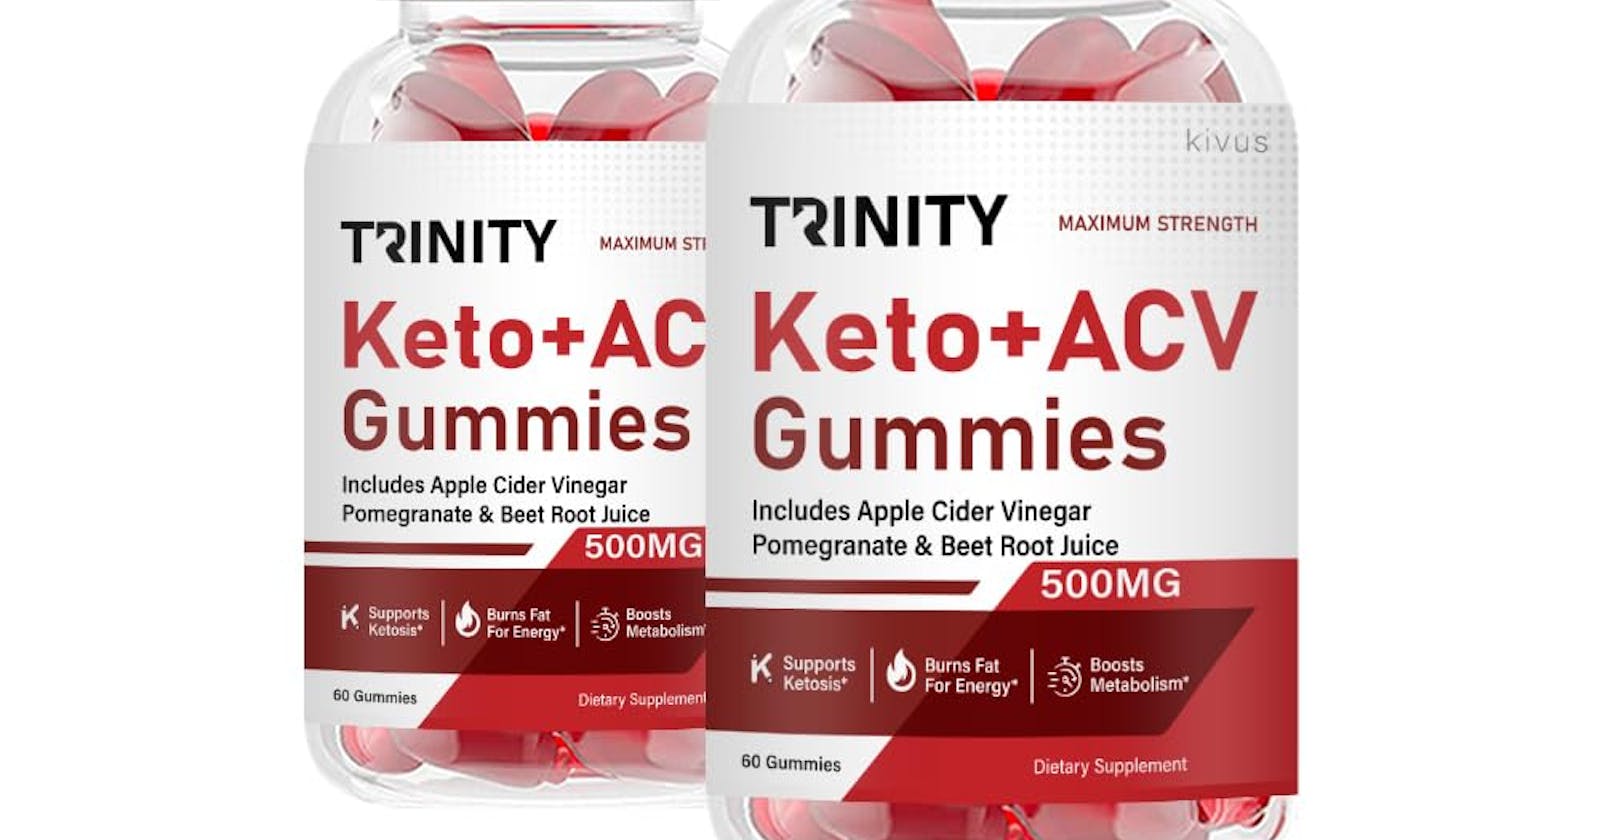 Trinity Keto ACV Gummies Cost, Ingredients